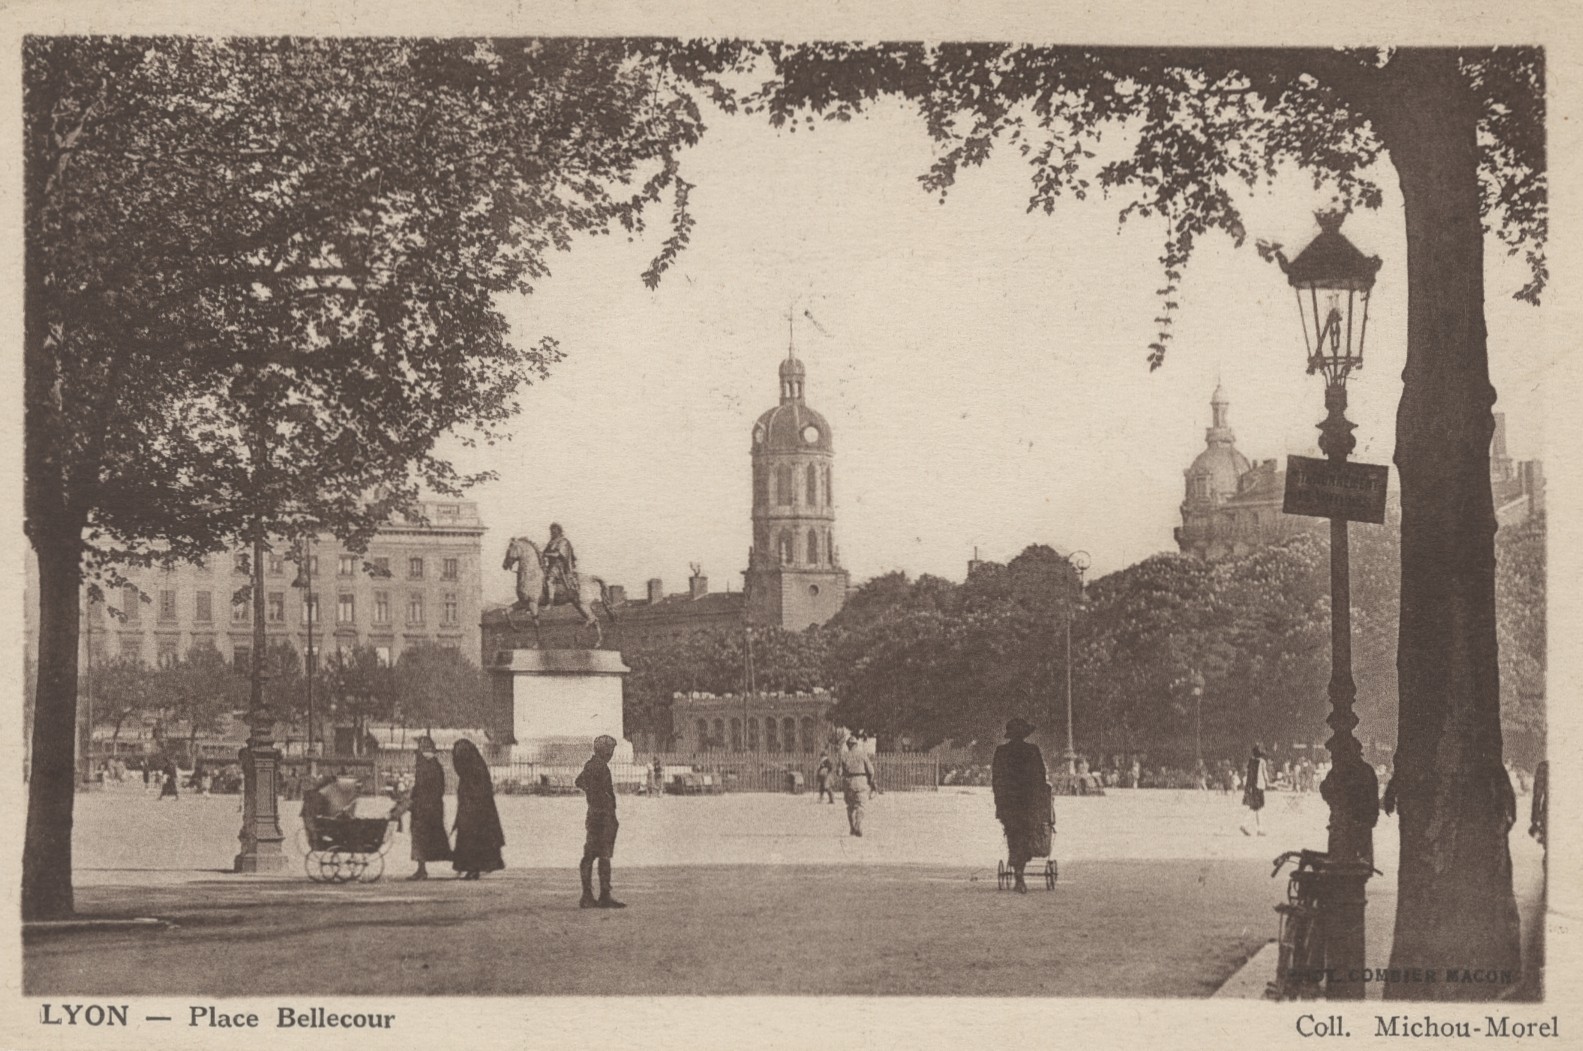 Lyon - Place Bellecour : carte postale NB, Combier (vers 1910, cote 4FI/1085)